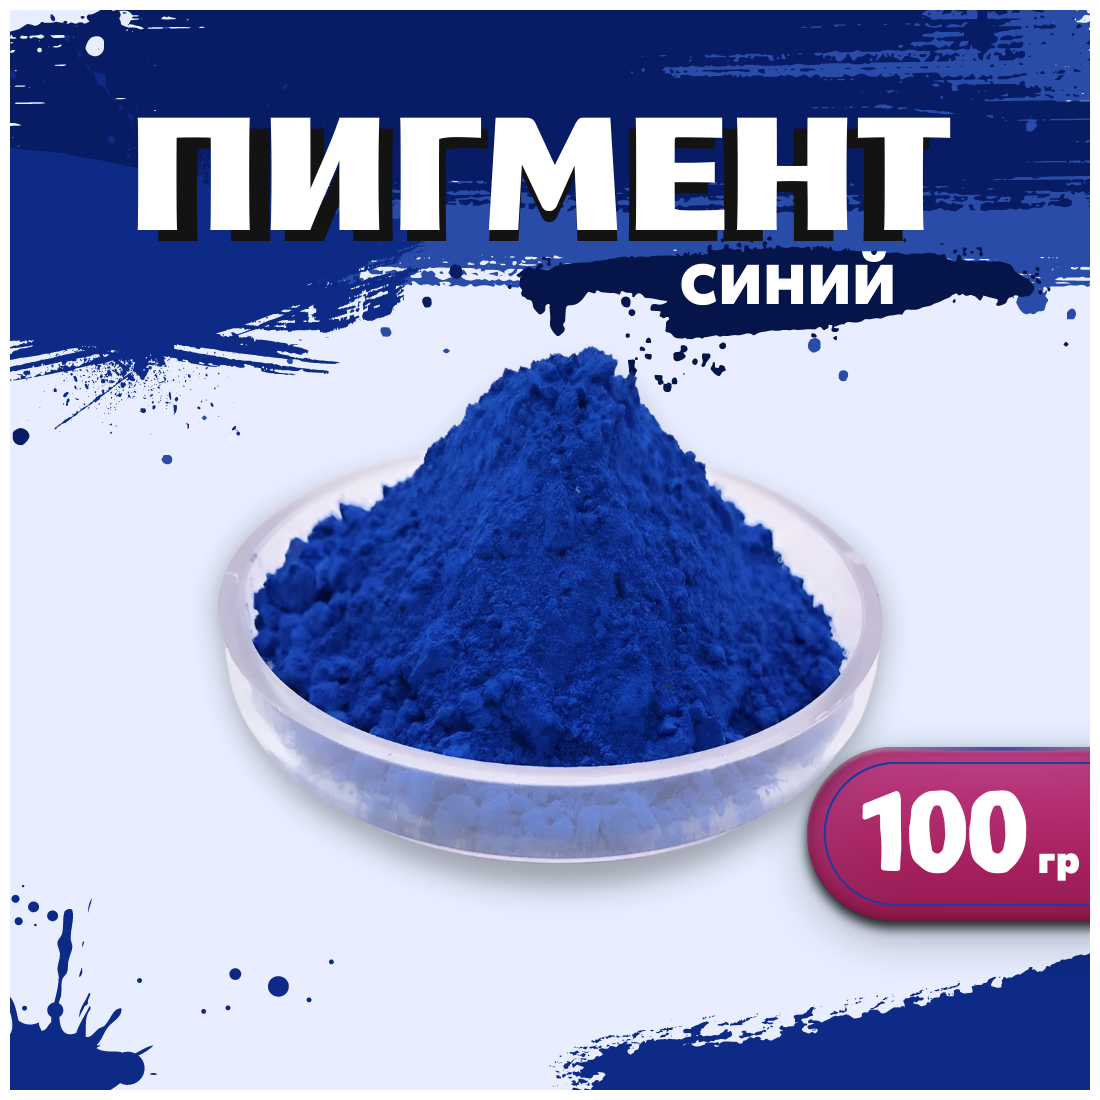 Пигмент синий железооксидный для ЛКМ, гипса, бетона 100 гр.